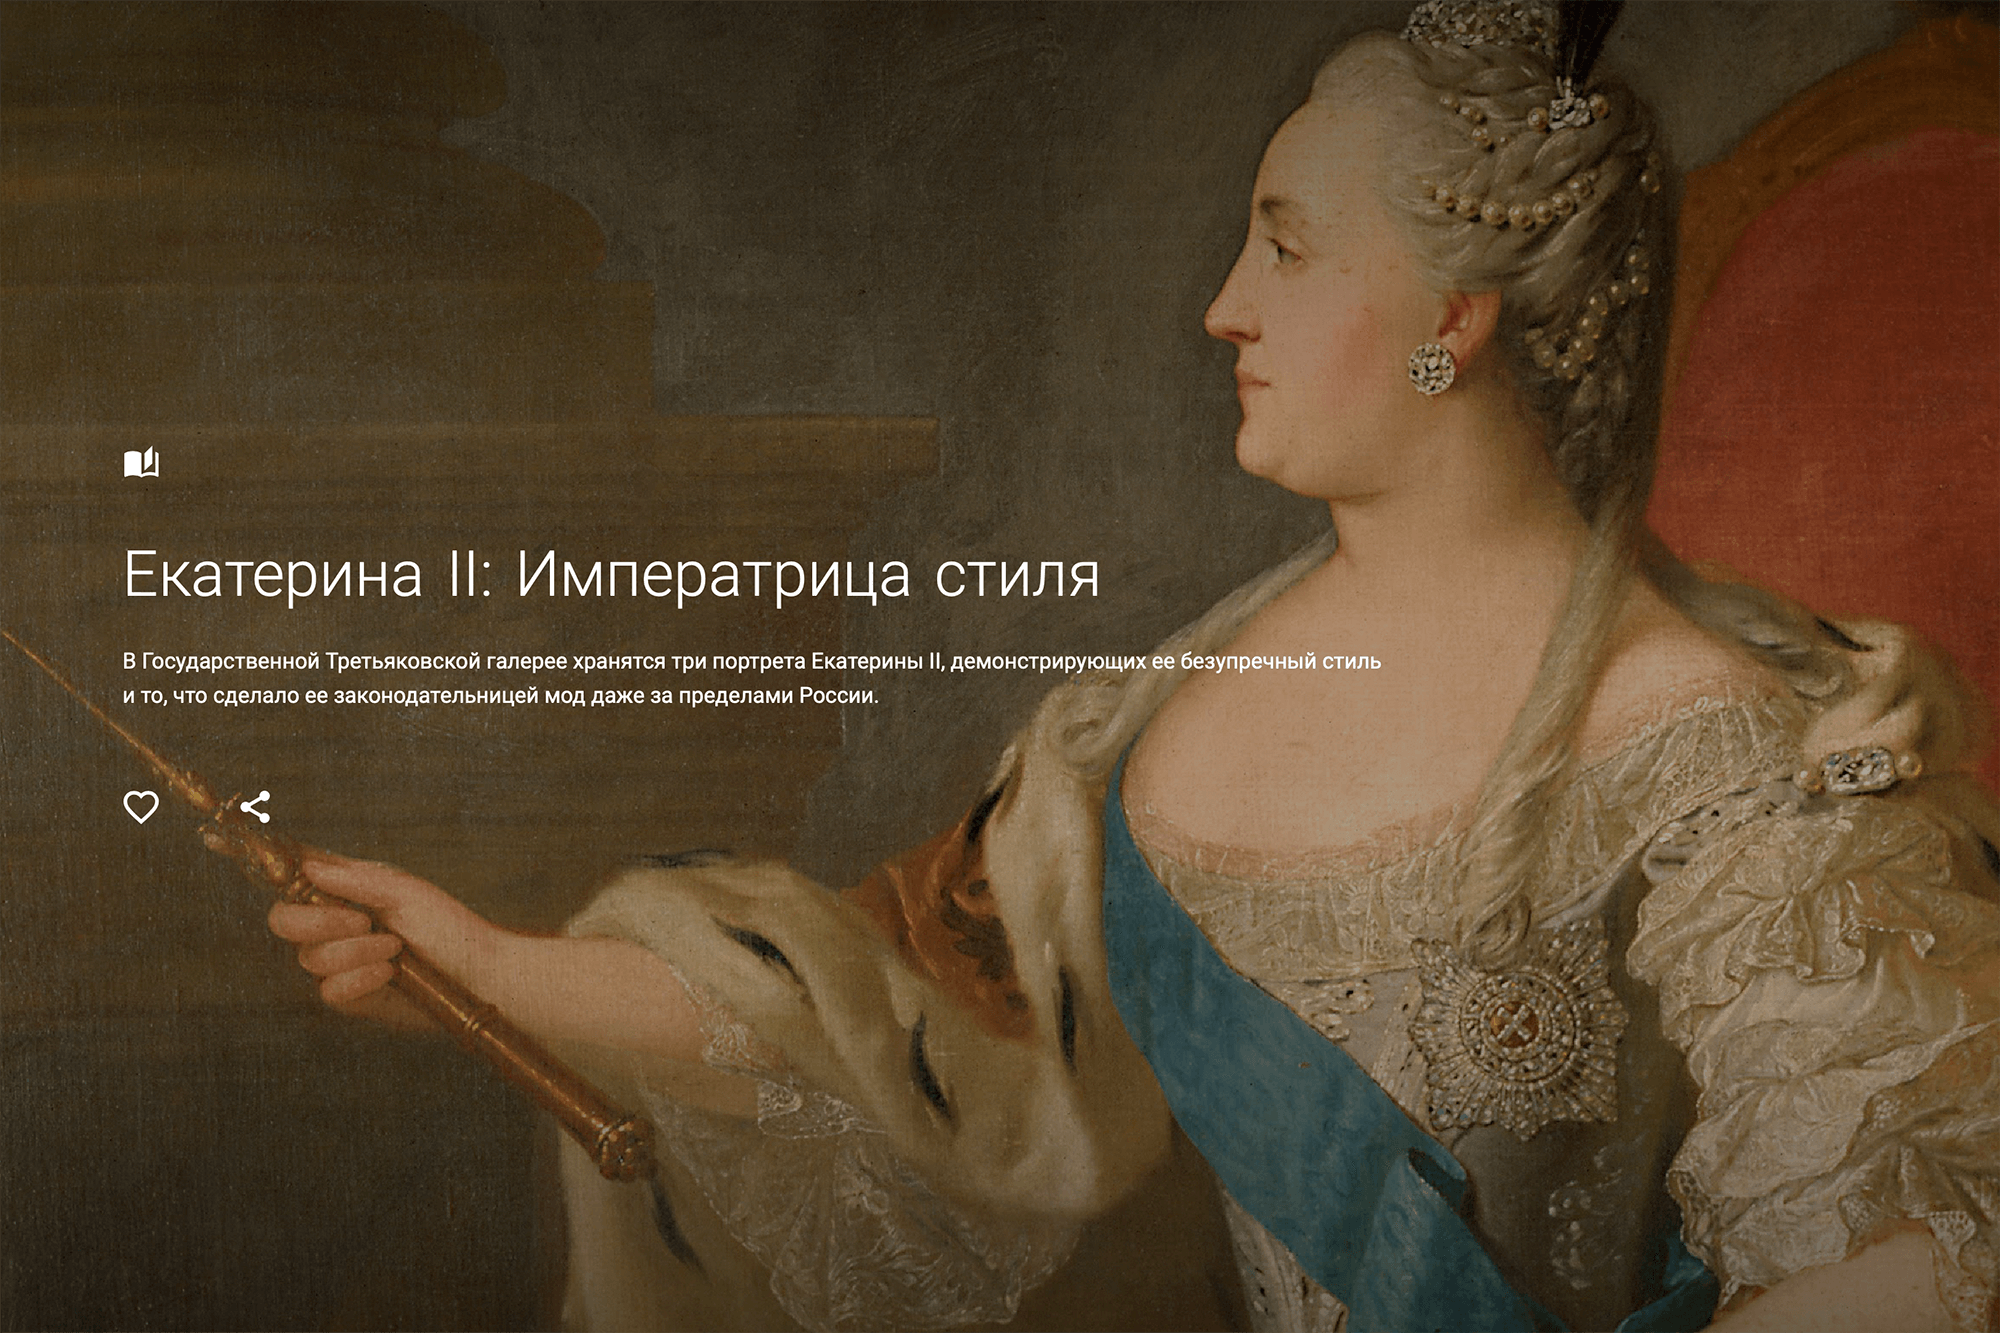 Одна из онлайн-выставок посвящена императрице Екатерине II